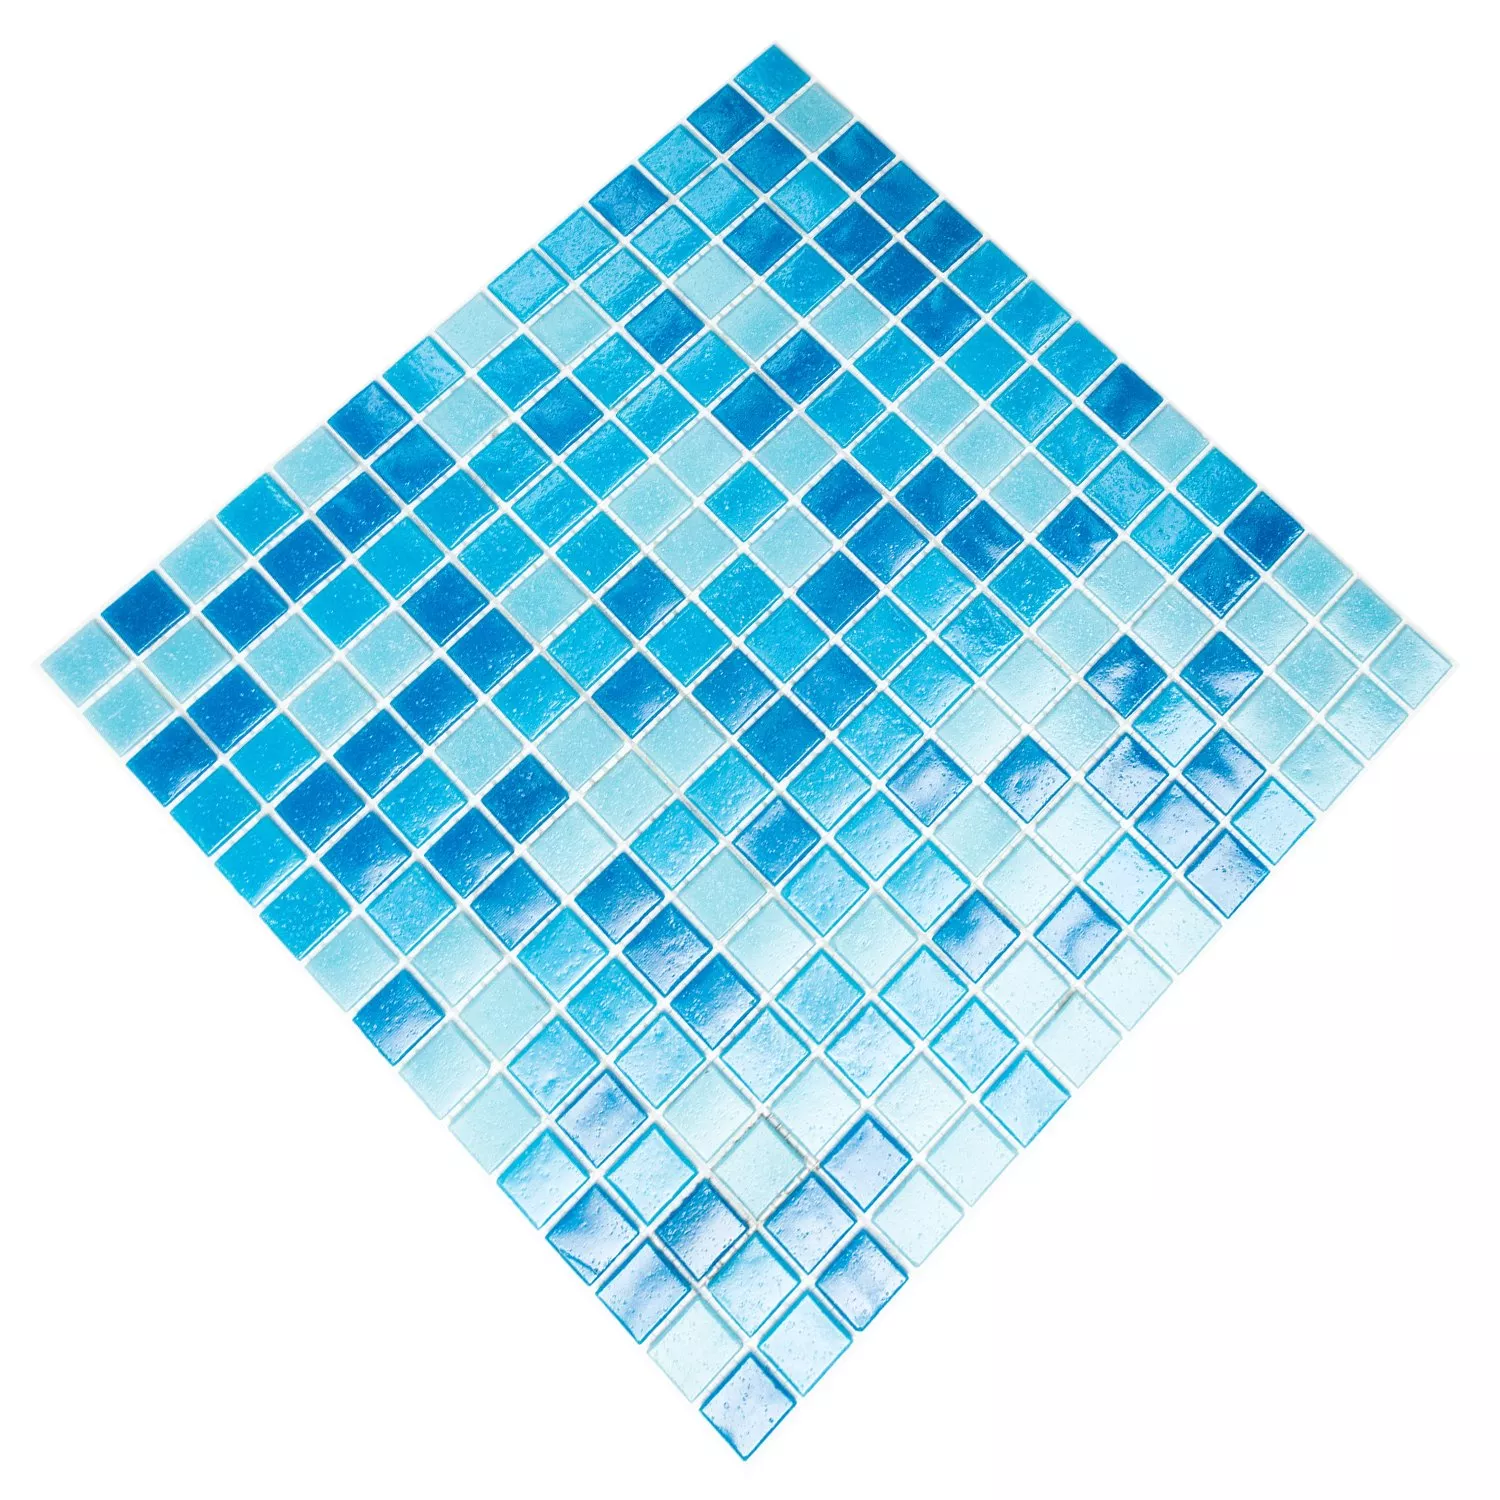 Muster von Schwimmbad Pool Mosaik Pazifik Papierverklebt